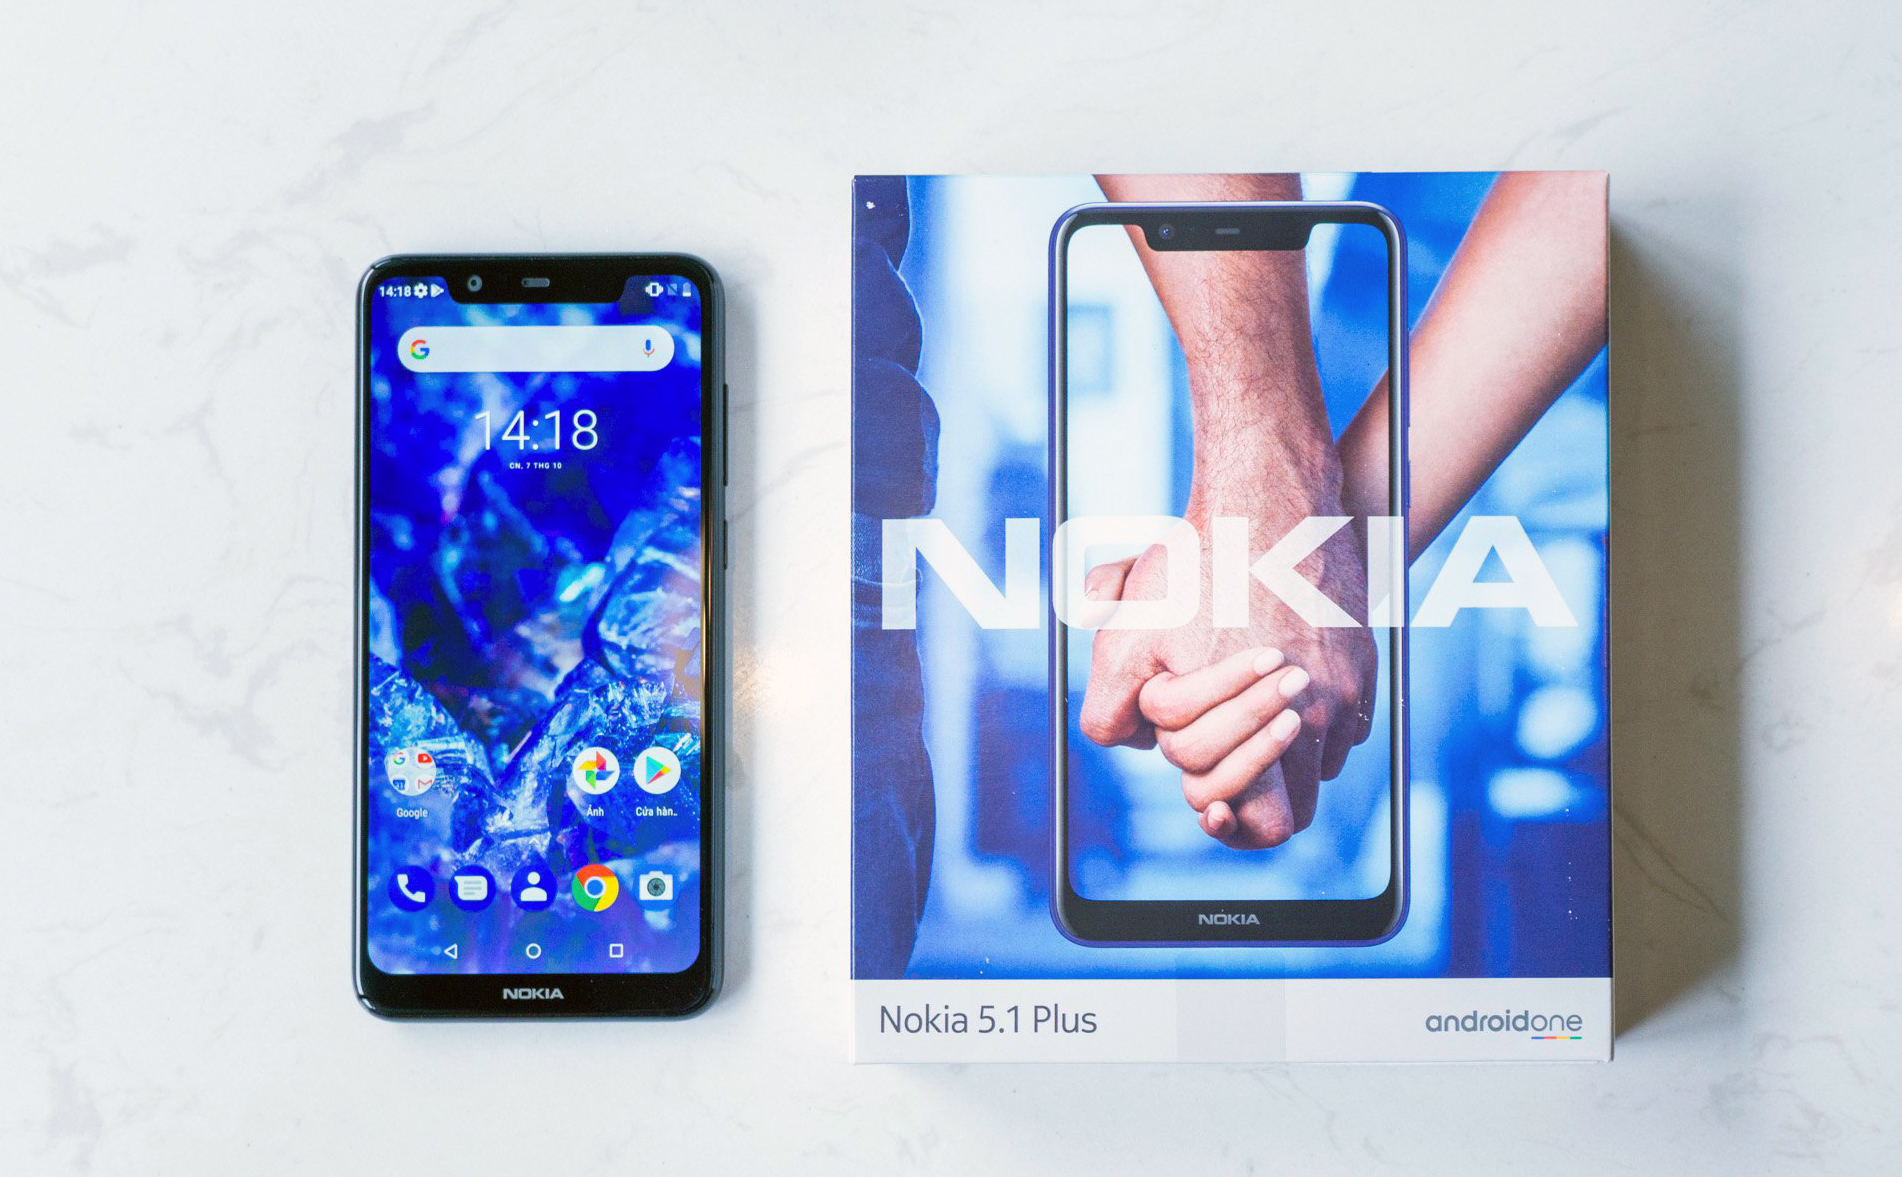 Máy Nokia chính hãng cũng được bảo hành 18 tháng, anh em nhớ lưu ý